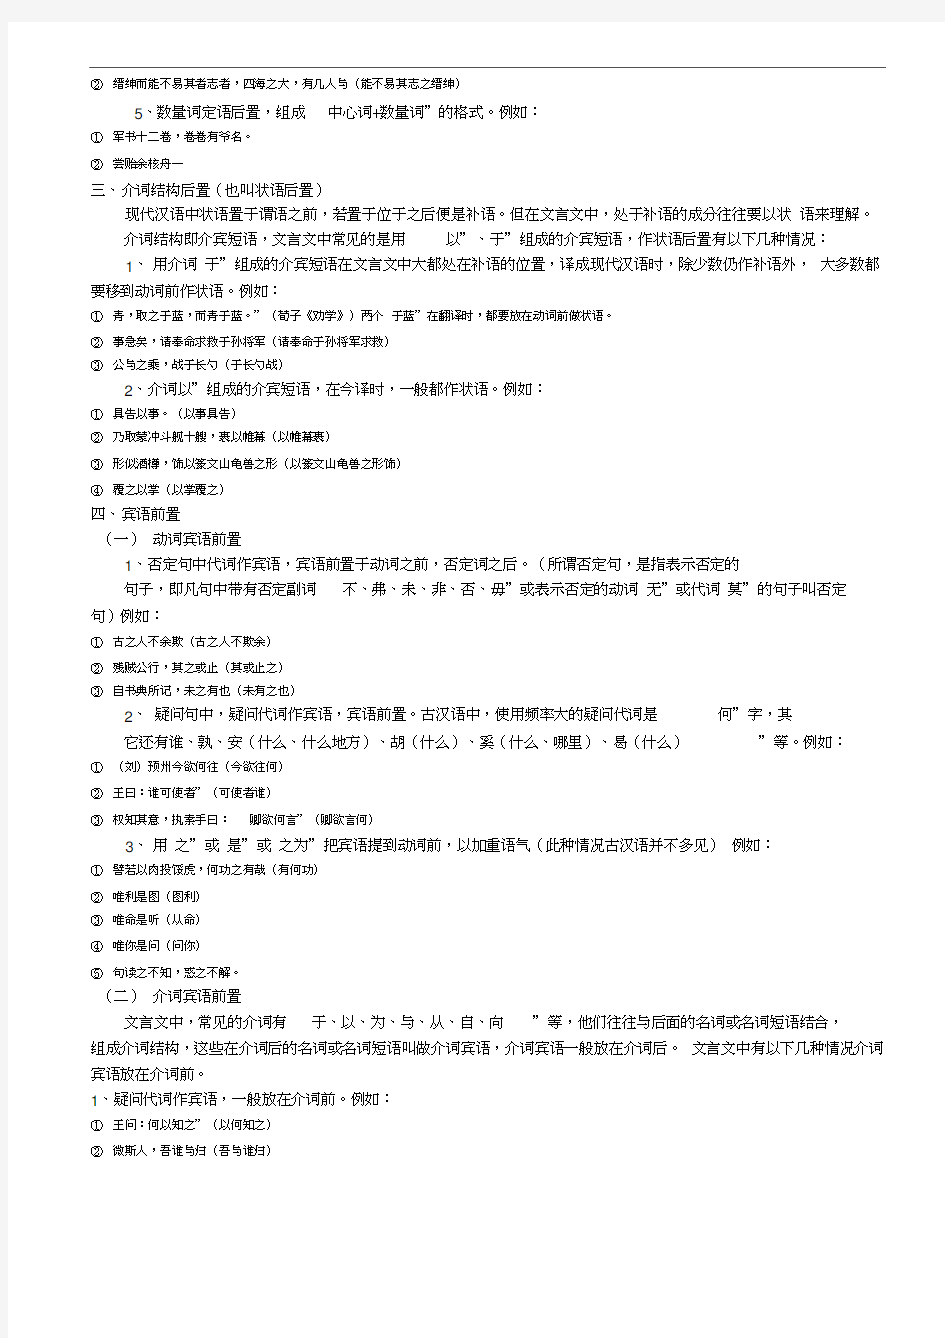 现代汉语的句子成分的顺序